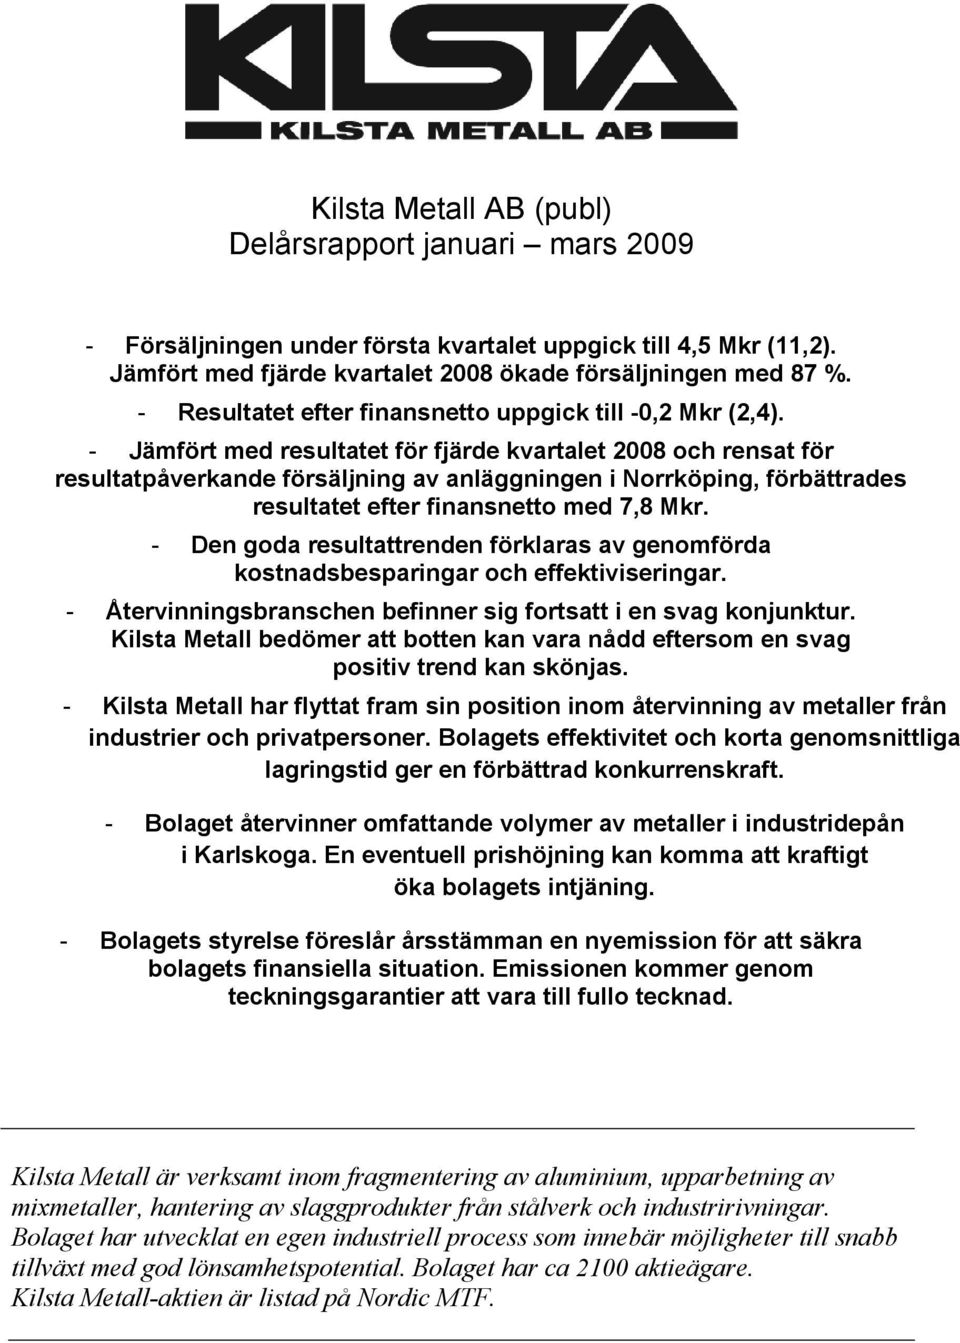 - Jämfört med resultatet för fjärde kvartalet 2008 och rensat för resultatpåverkande försäljning av anläggningen i Norrköping, förbättrades resultatet efter finansnetto med 7,8 Mkr.